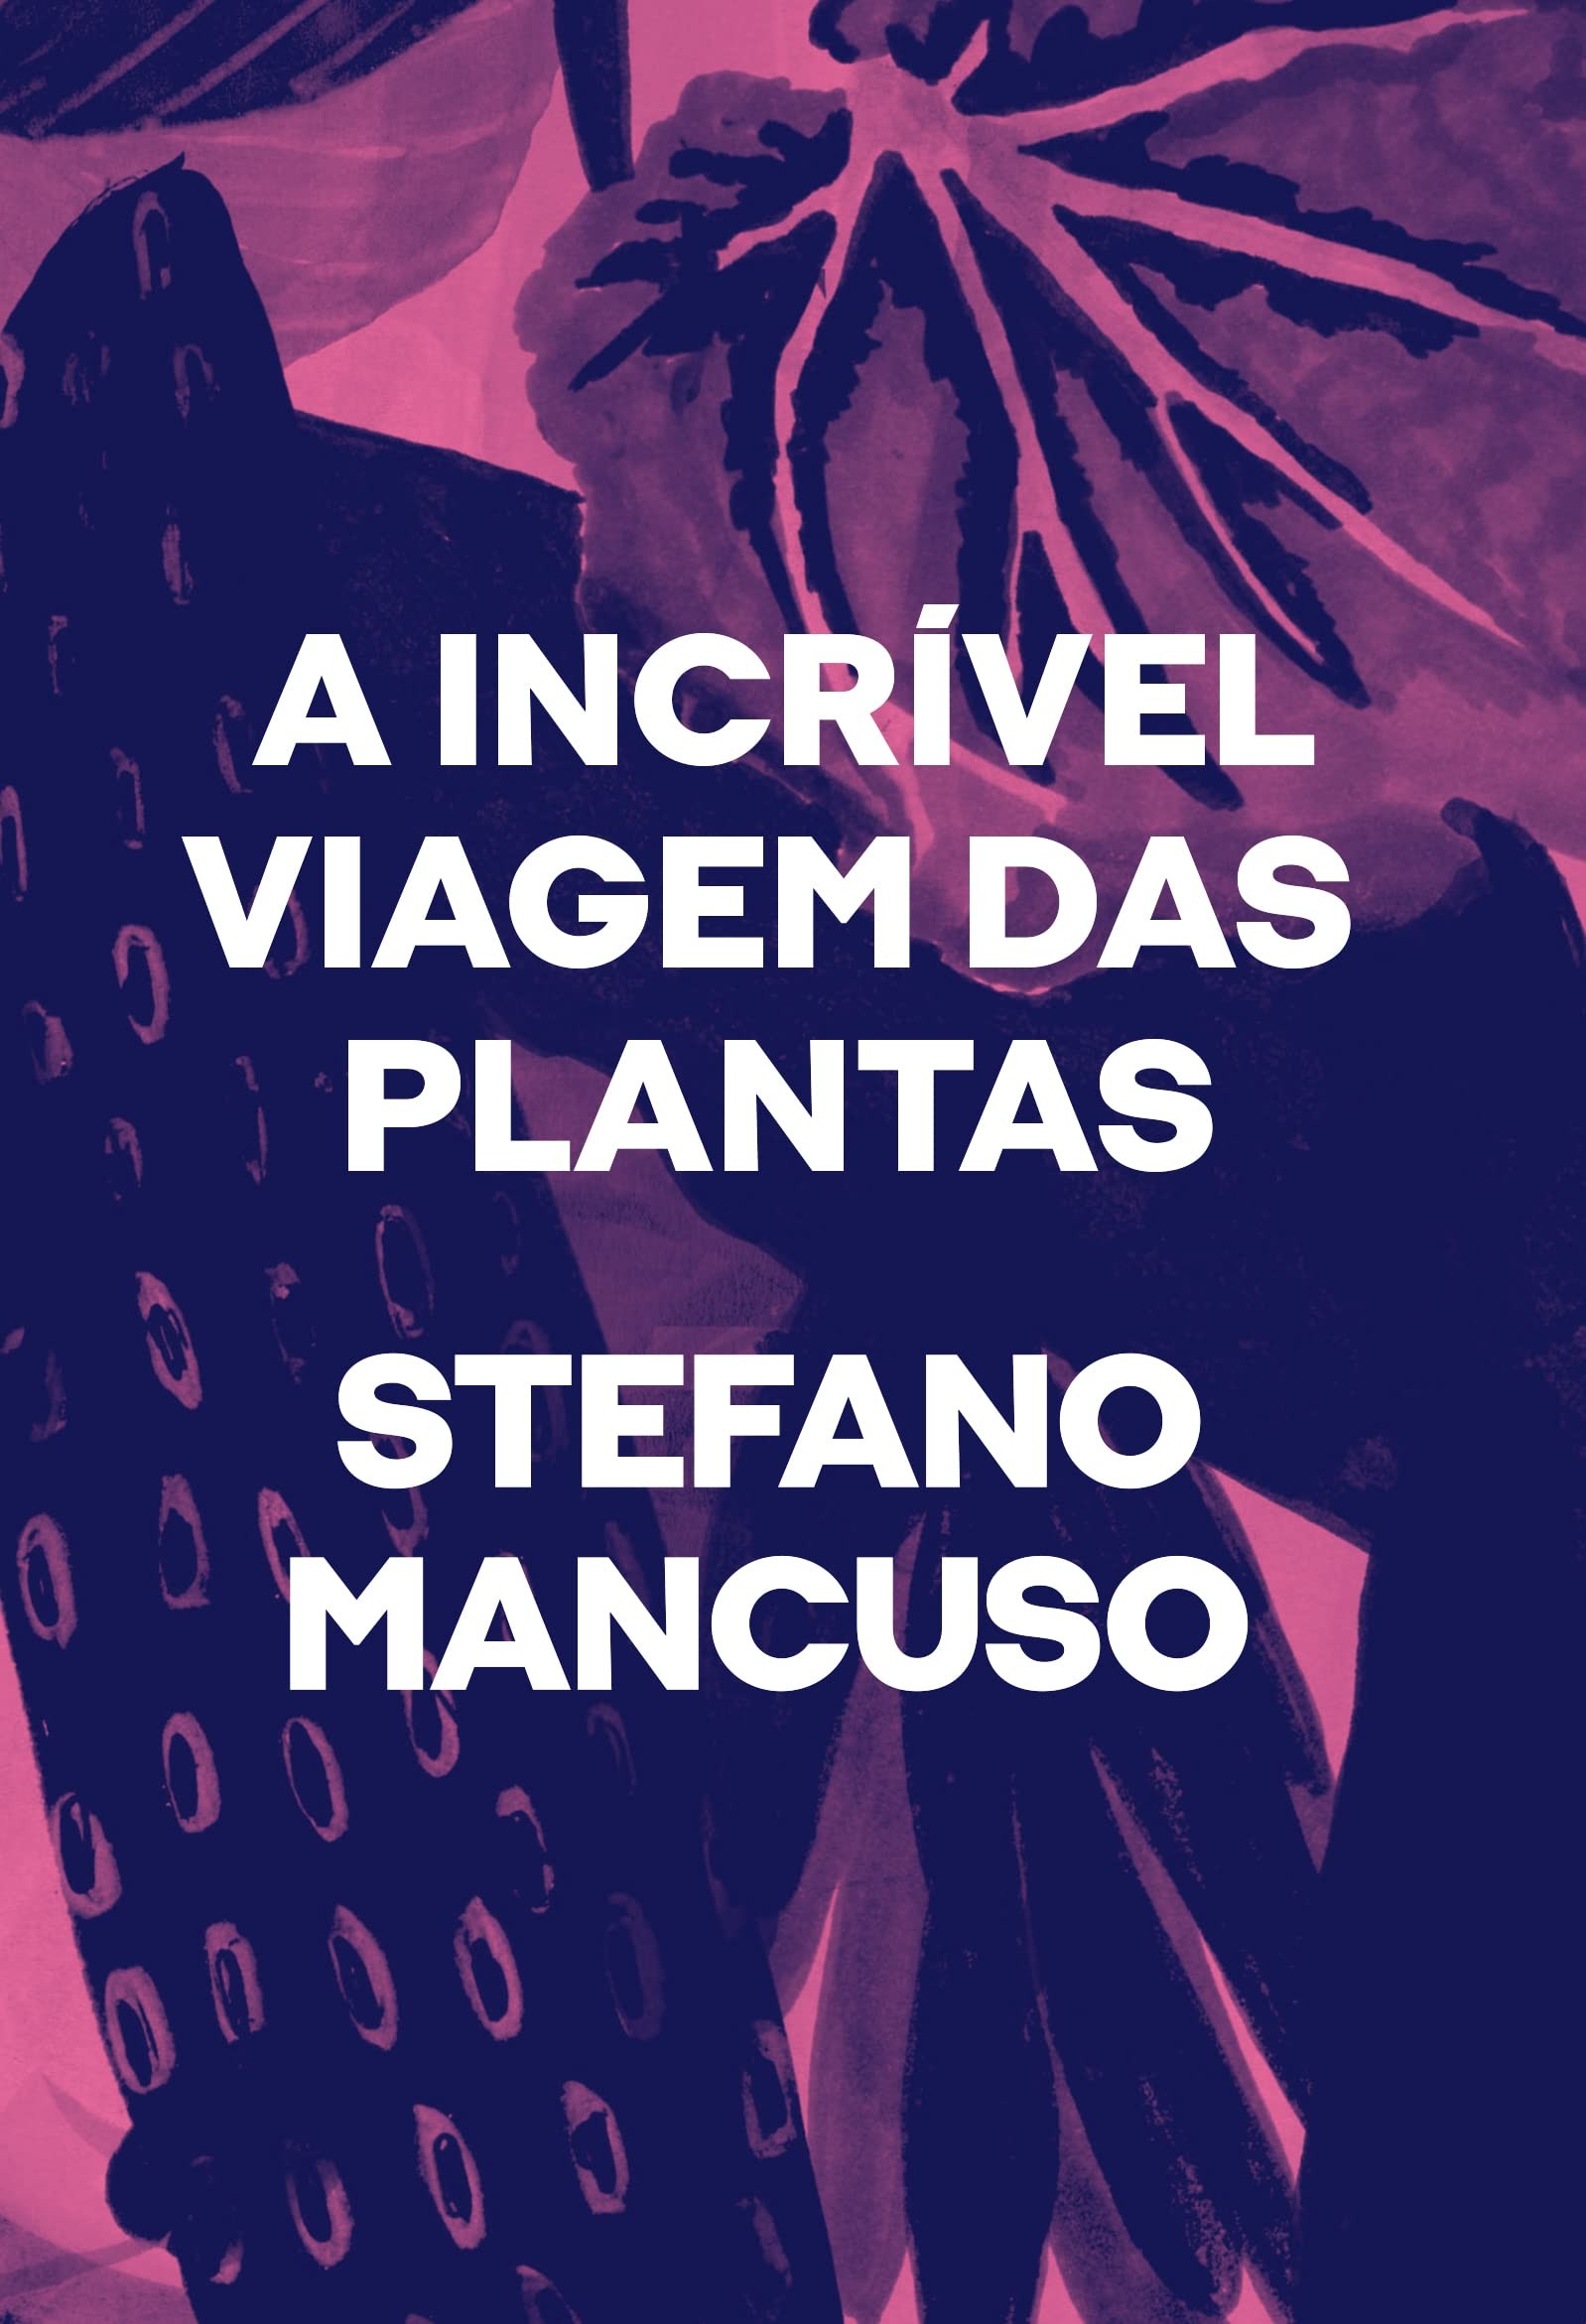 A incrível viagem das plantas, por Stefano Mancuso (Ubu Editora, 192 páginas, R$54,90) (Foto: Divulgação)